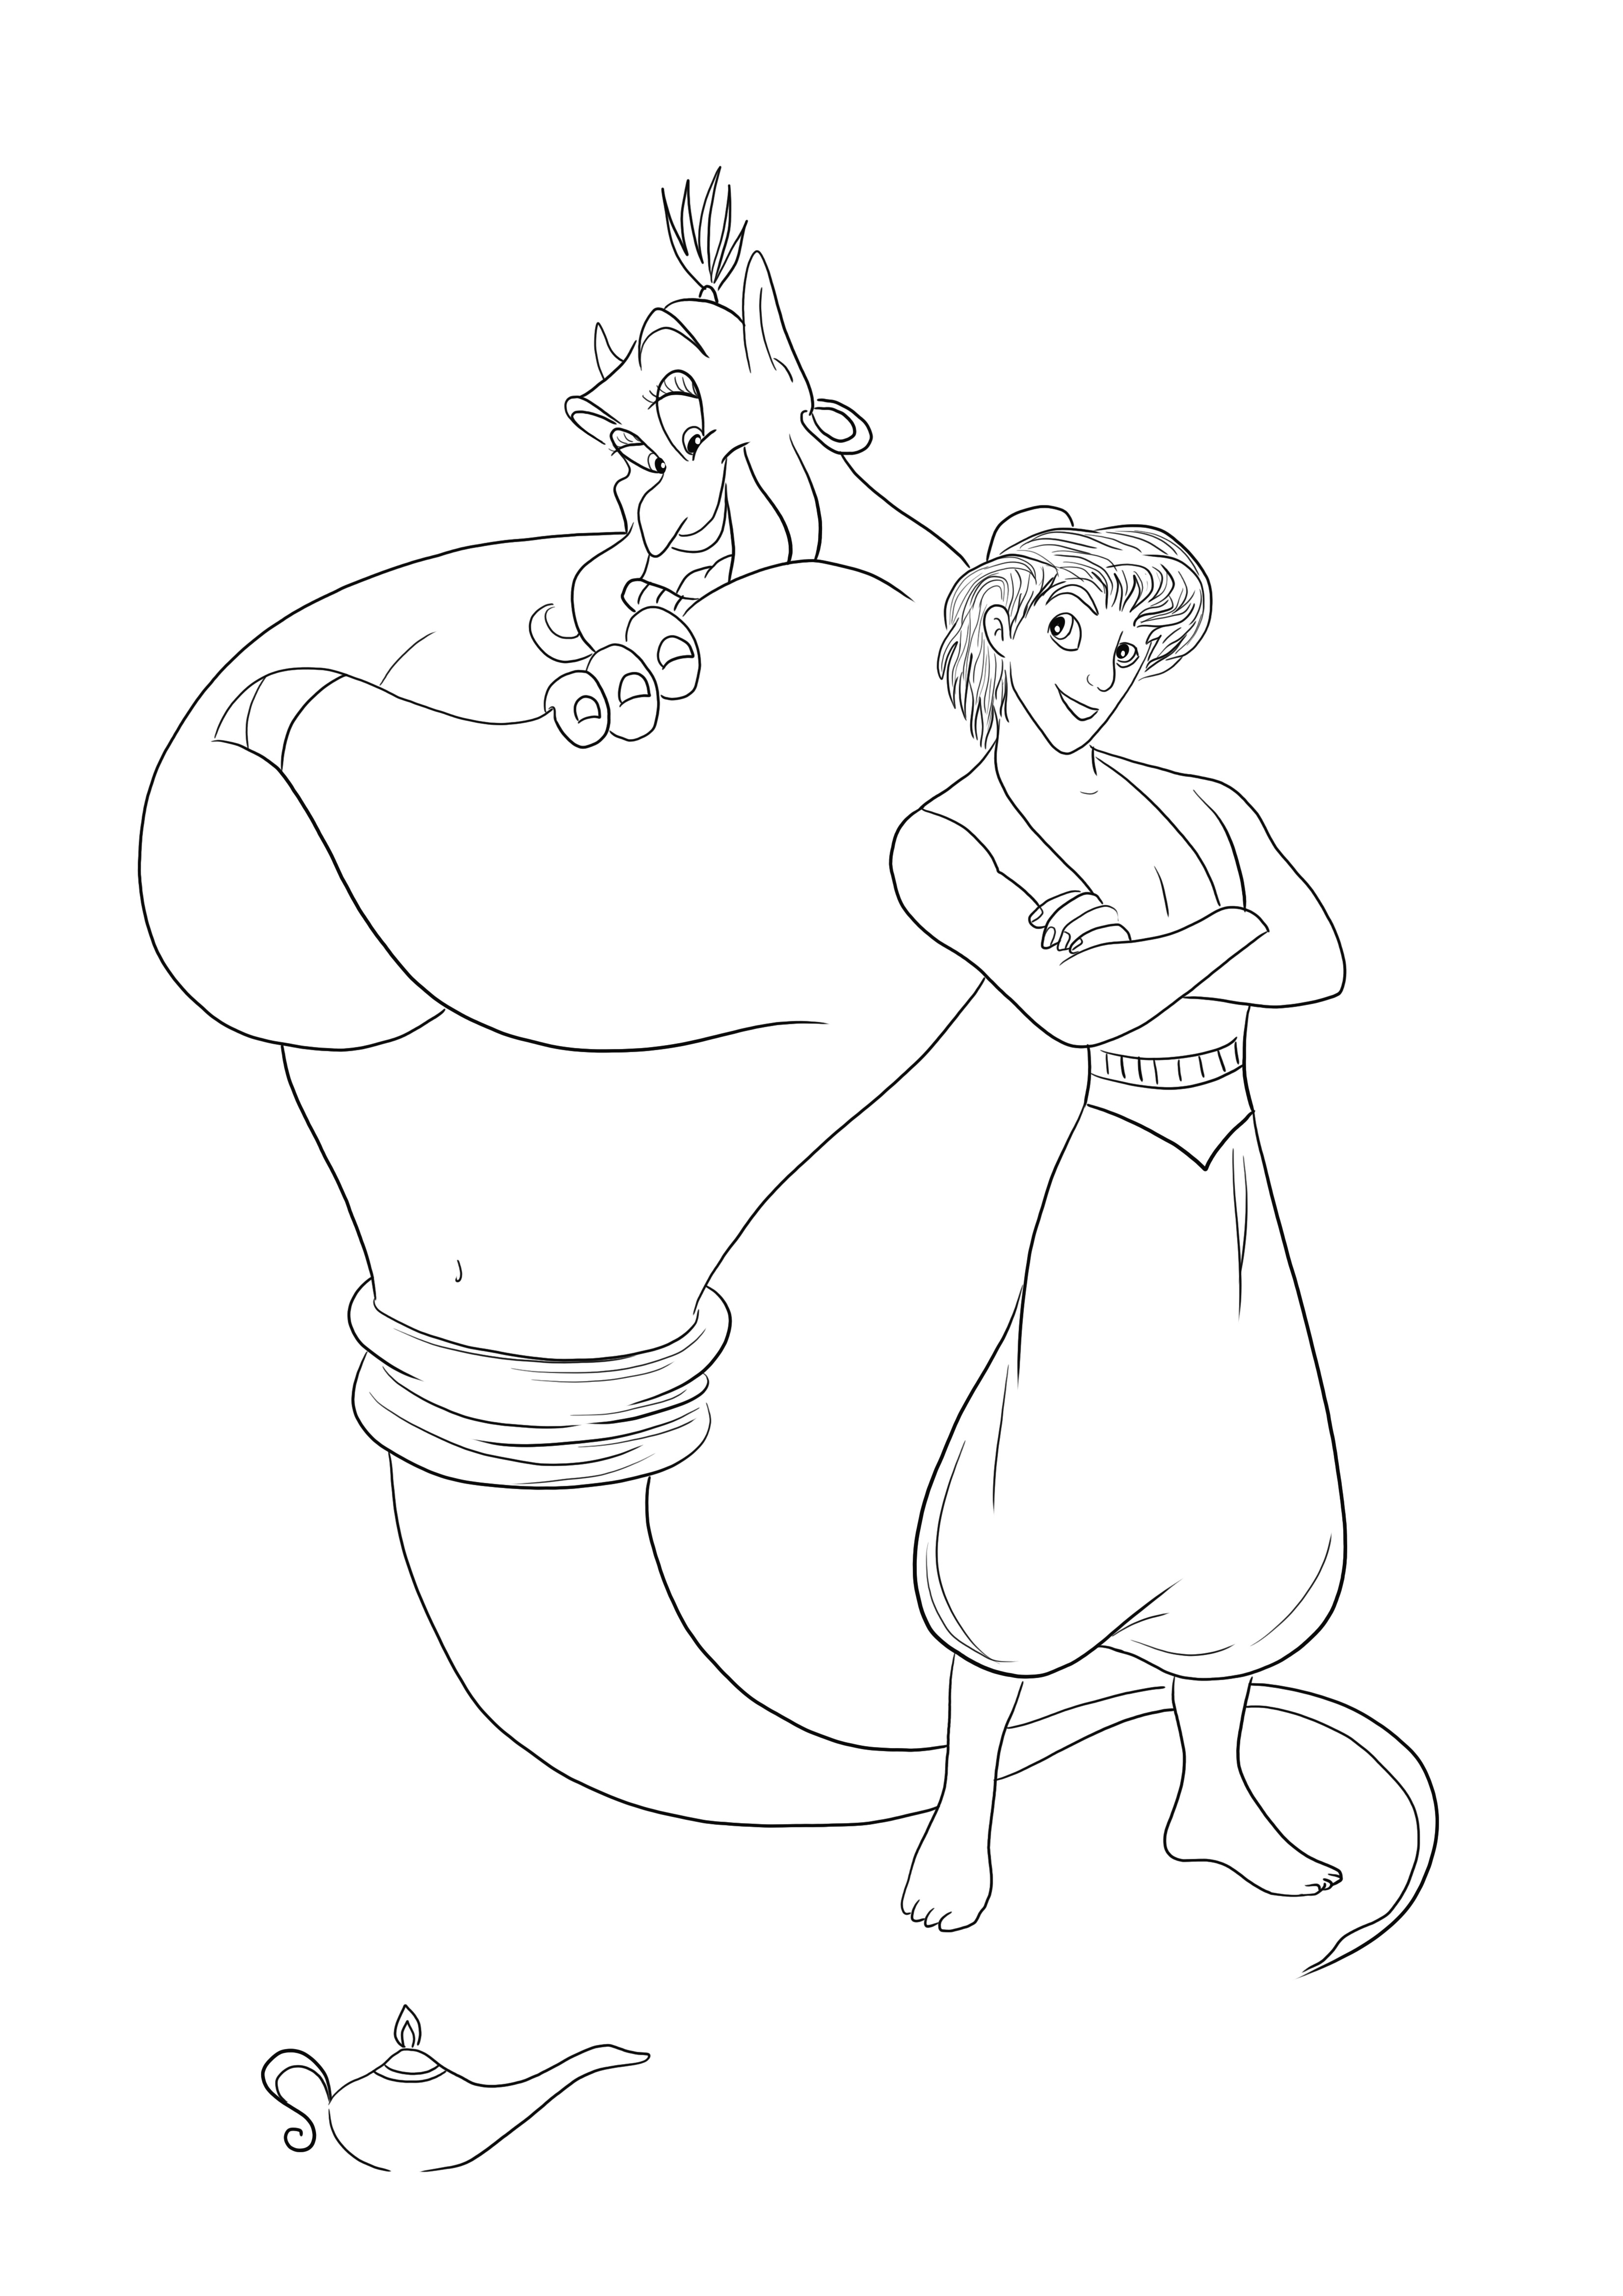 Genie și Aladdin imprimabile gratuit pentru a colora și a se distra în același timp